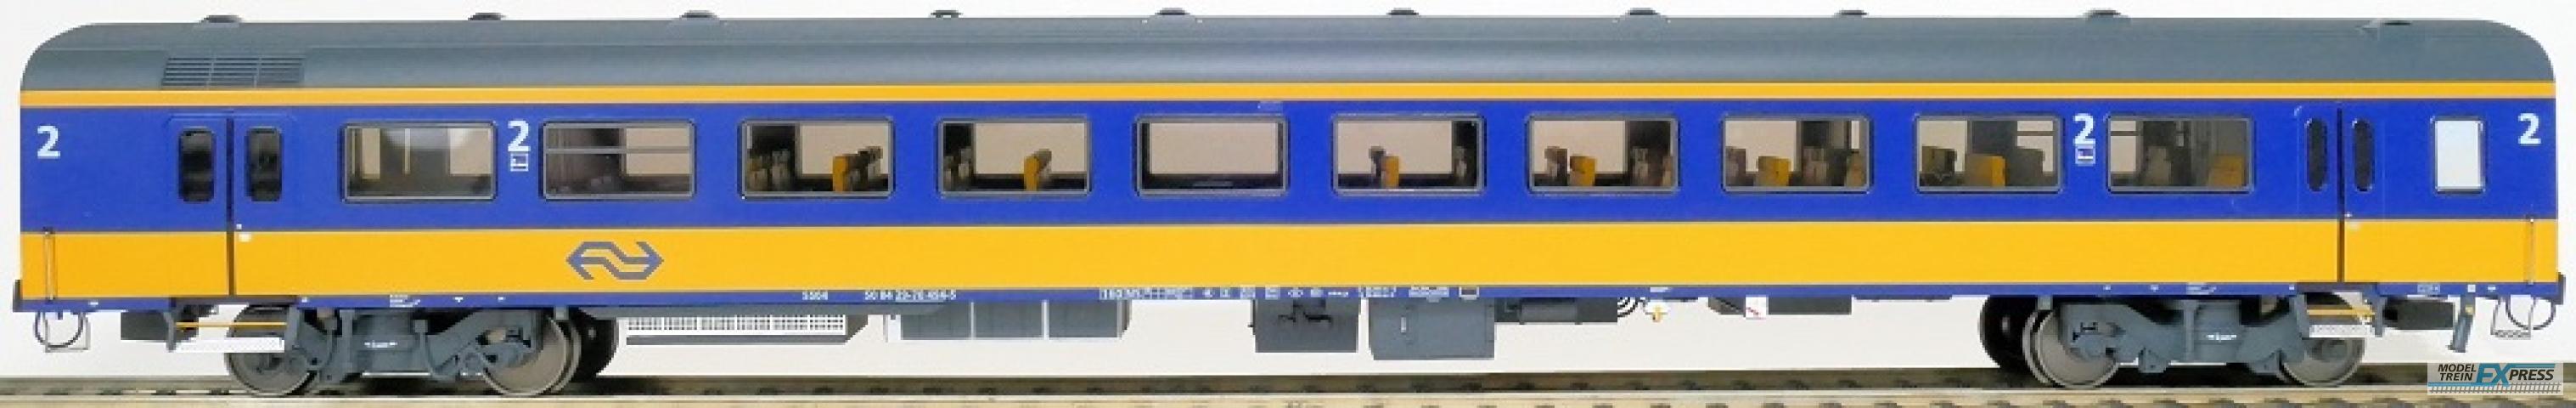 Exact-train 11103 NS ICRm Garnitur 4 Reisezugwagen Bf( Neue farbe Gelb / Blau), Ep. V